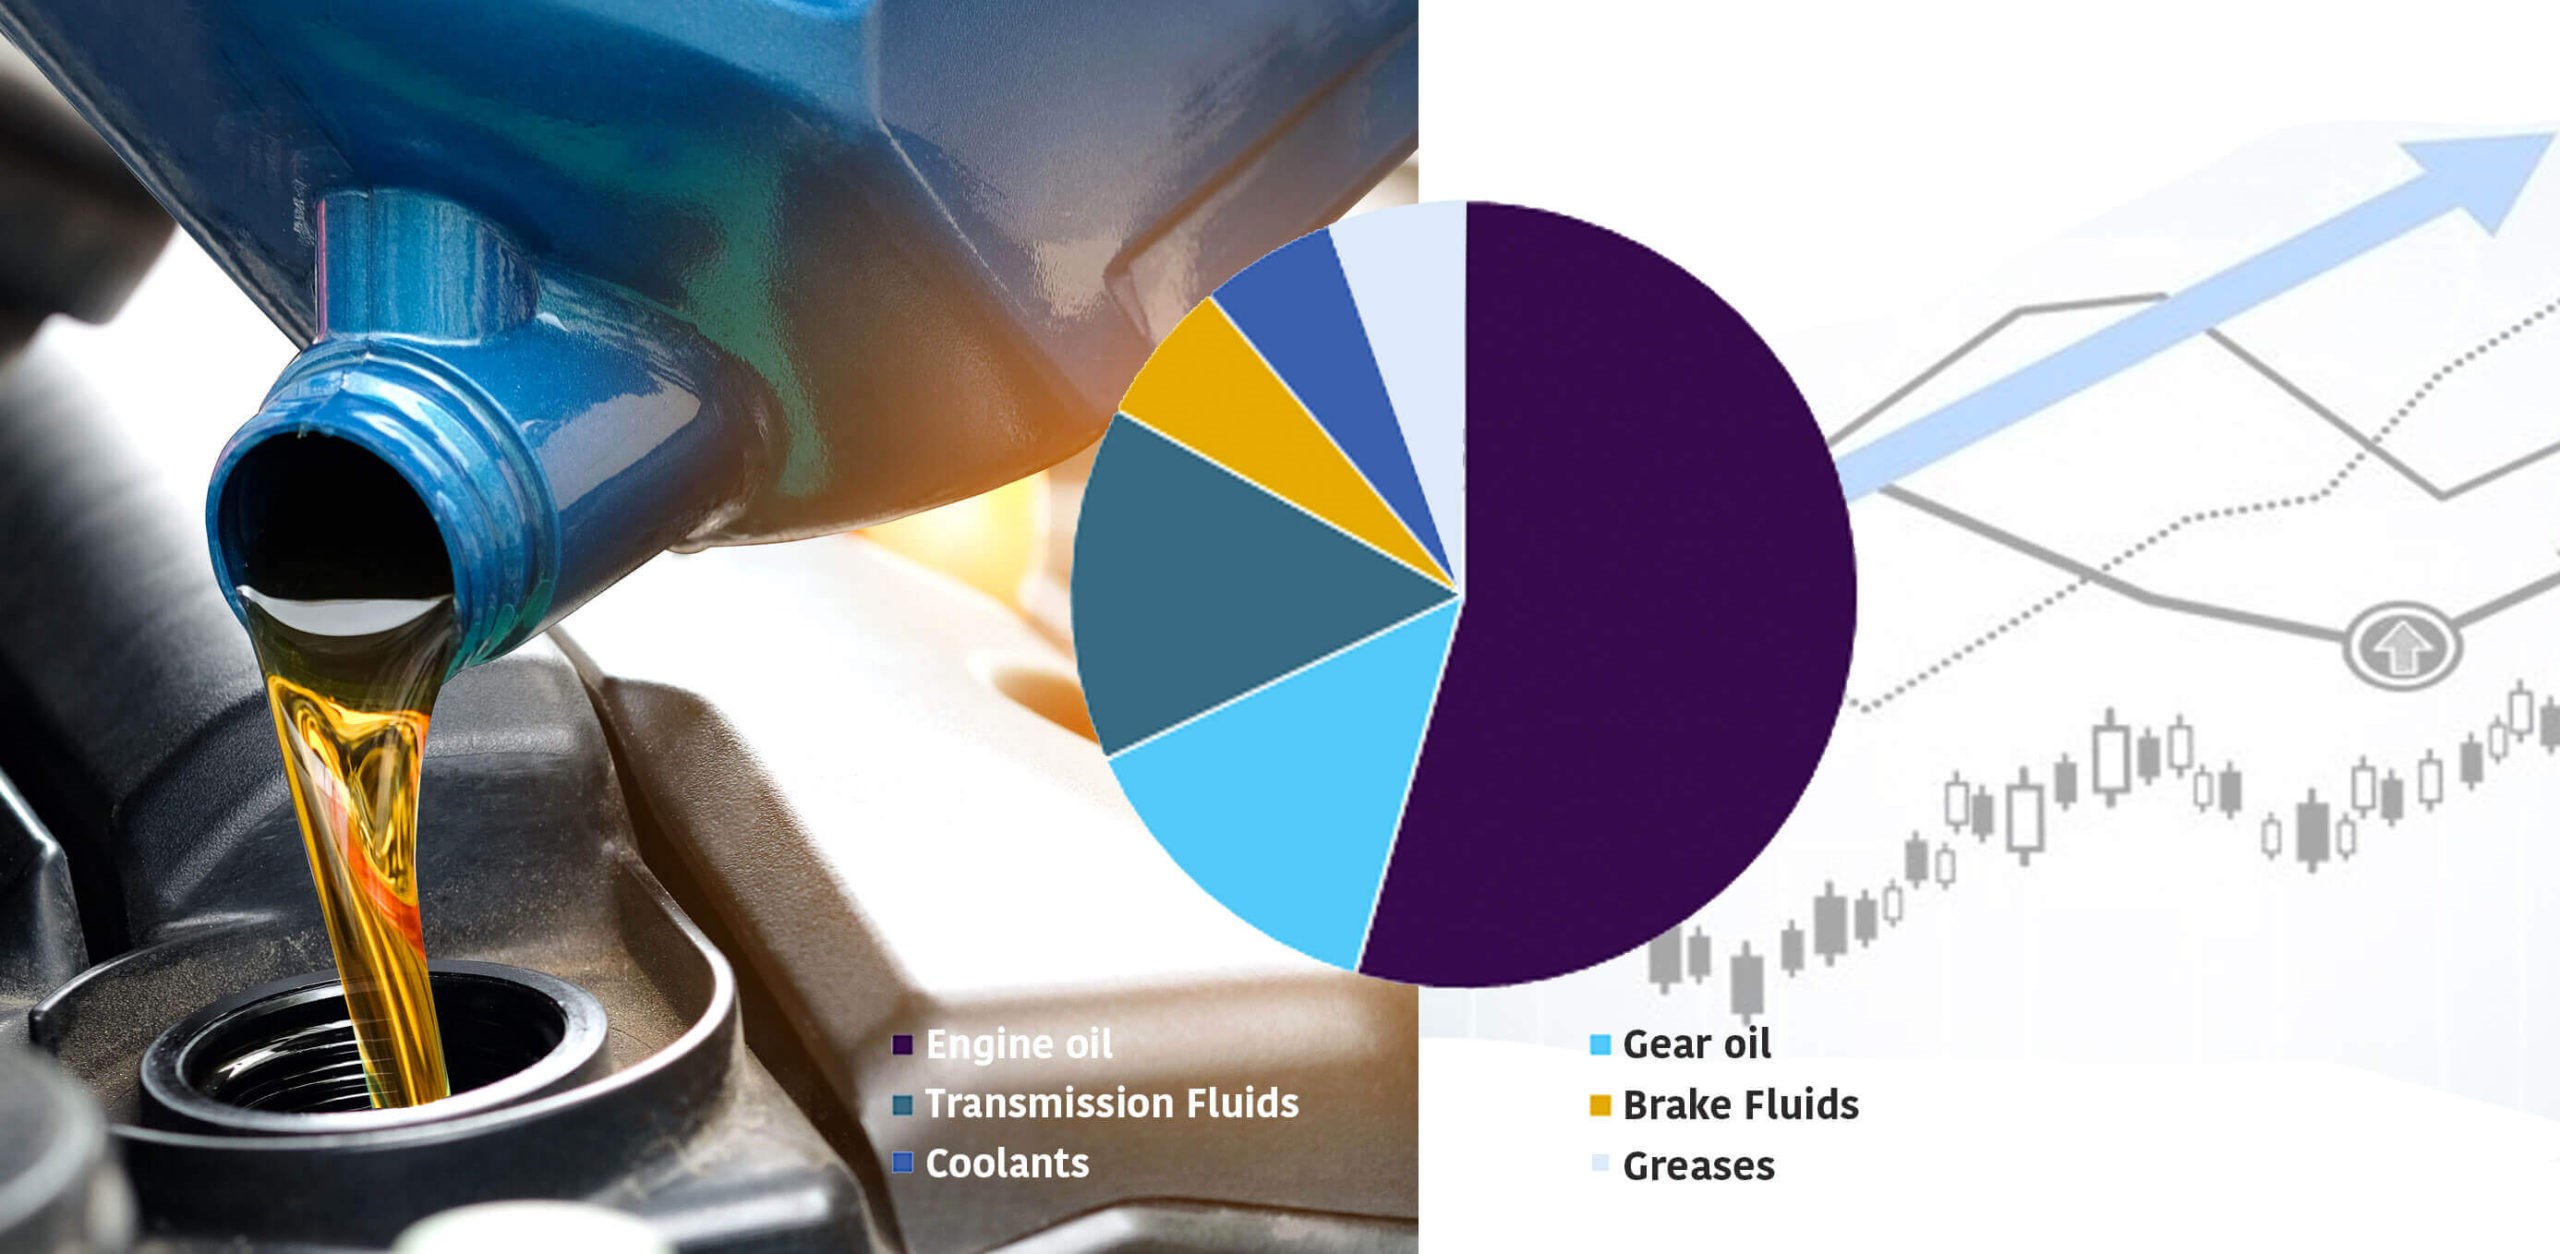 Automotive lubricants market size